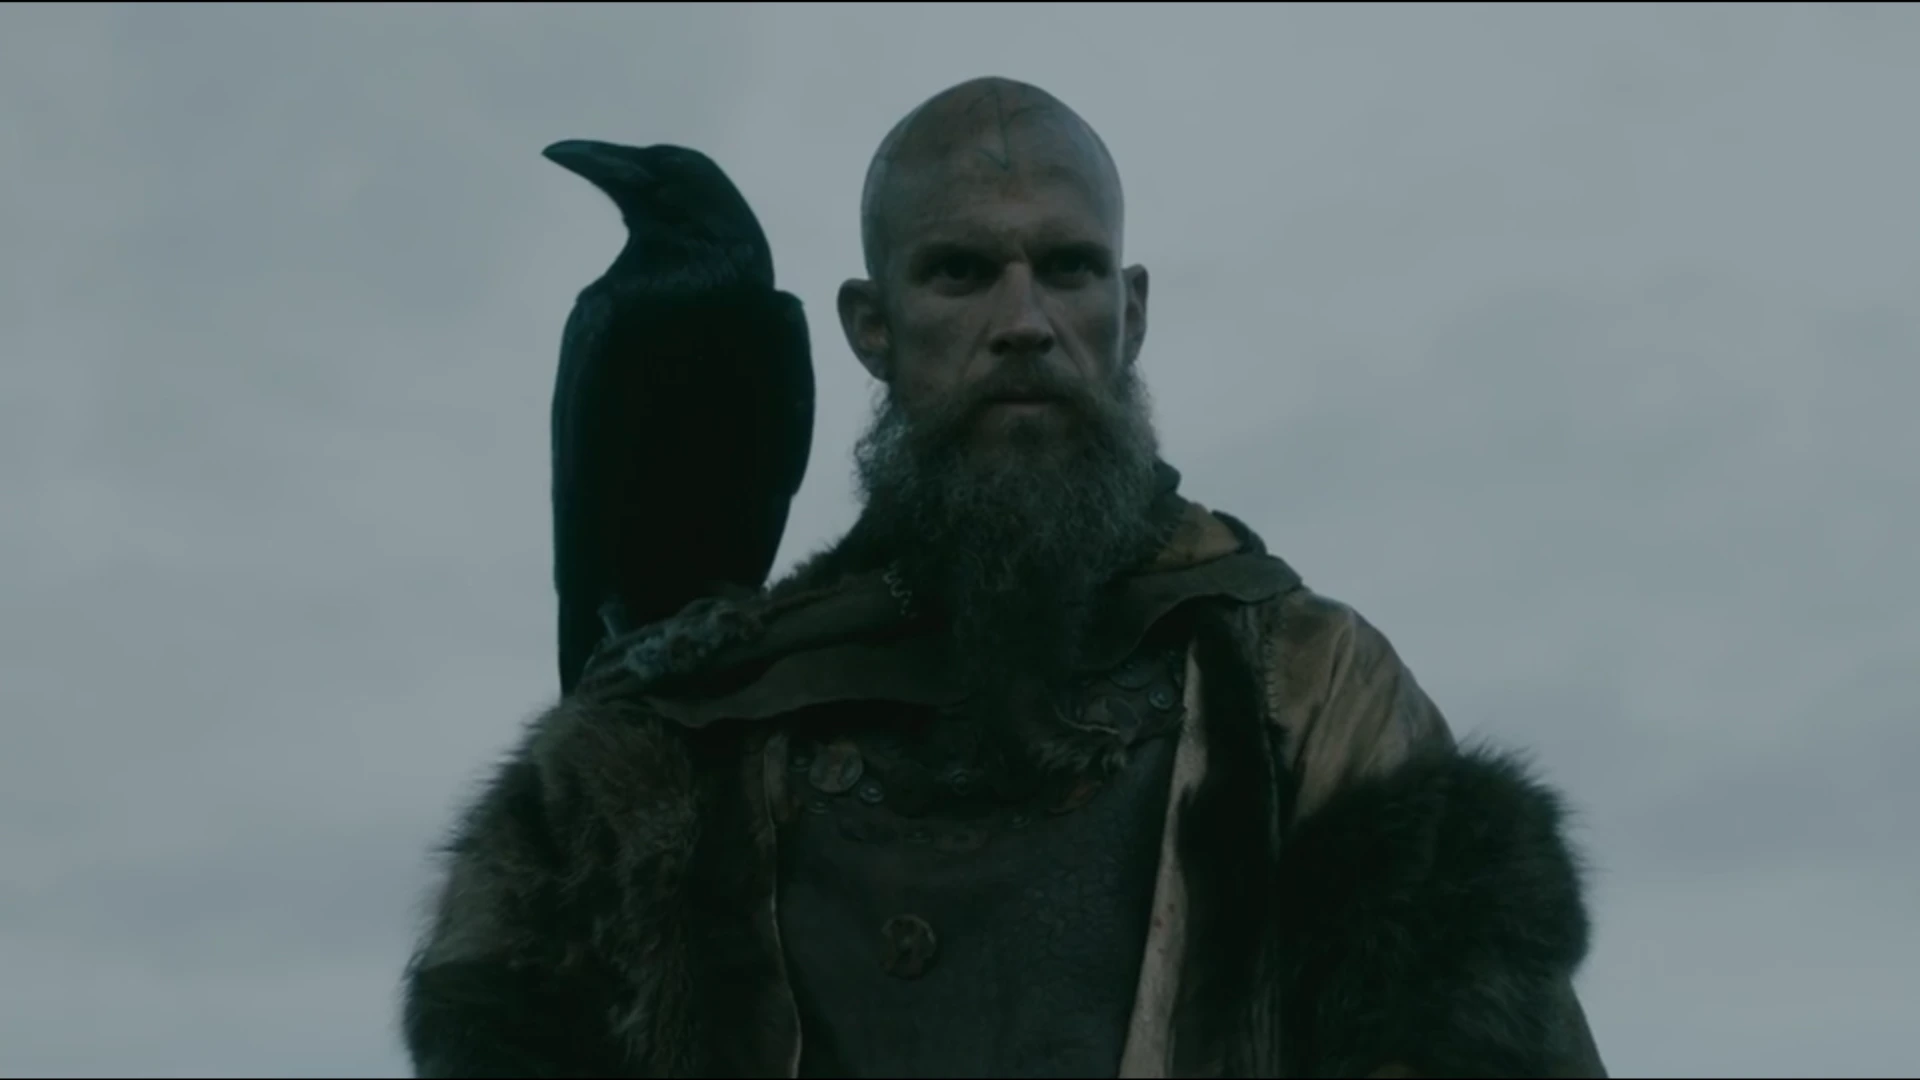 Personagem sumida pode retornar no final de Vikings - Observatório